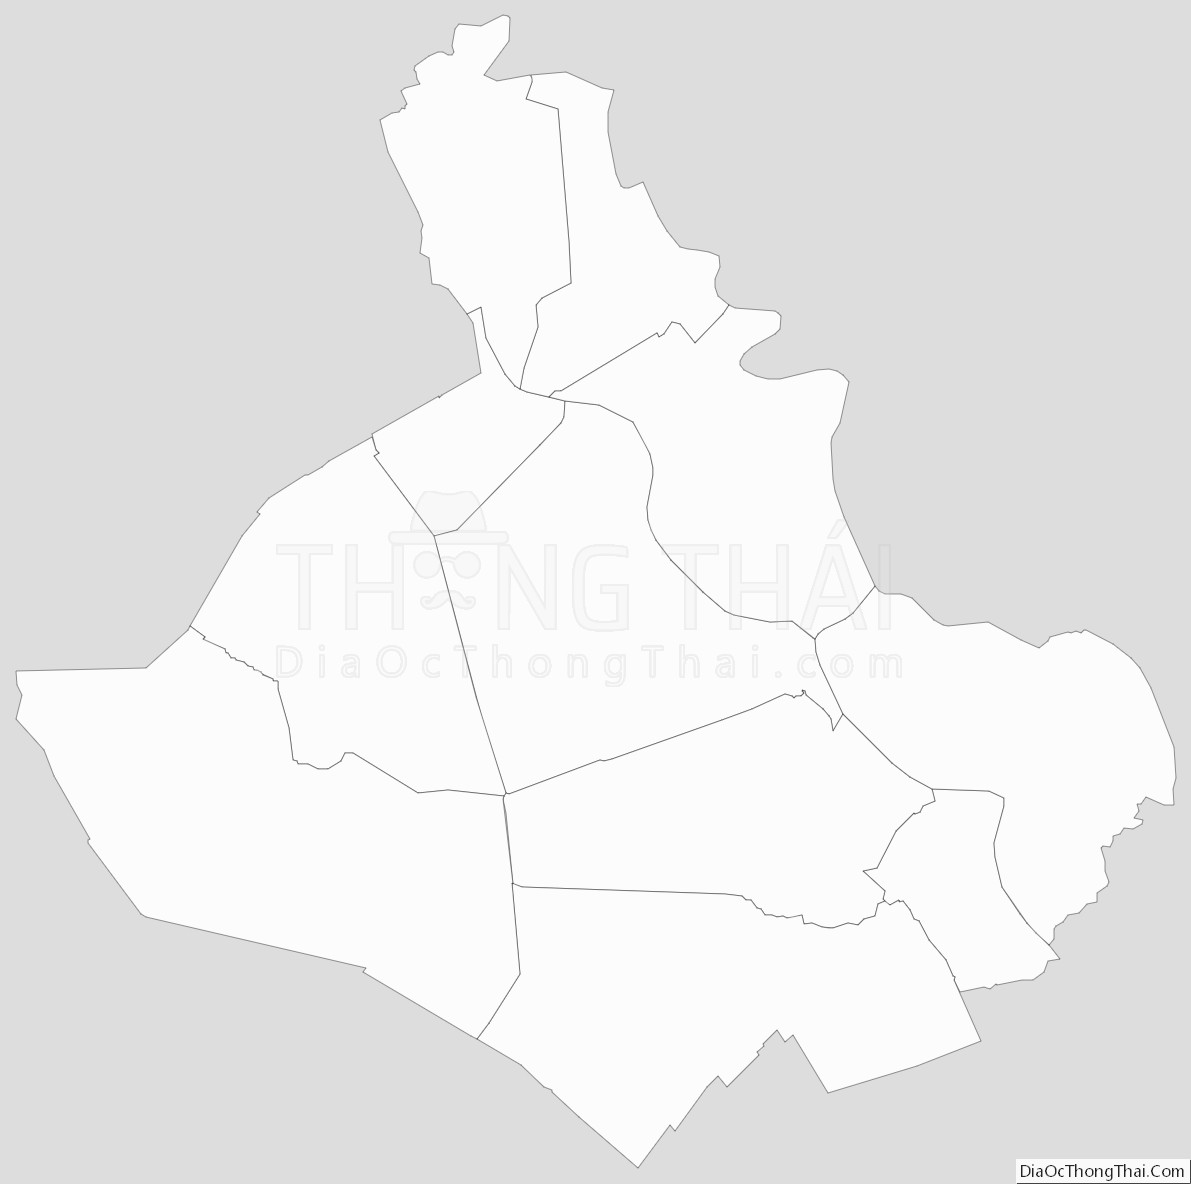 Bản đồ hành chính tỉnh An Giang dạng outline